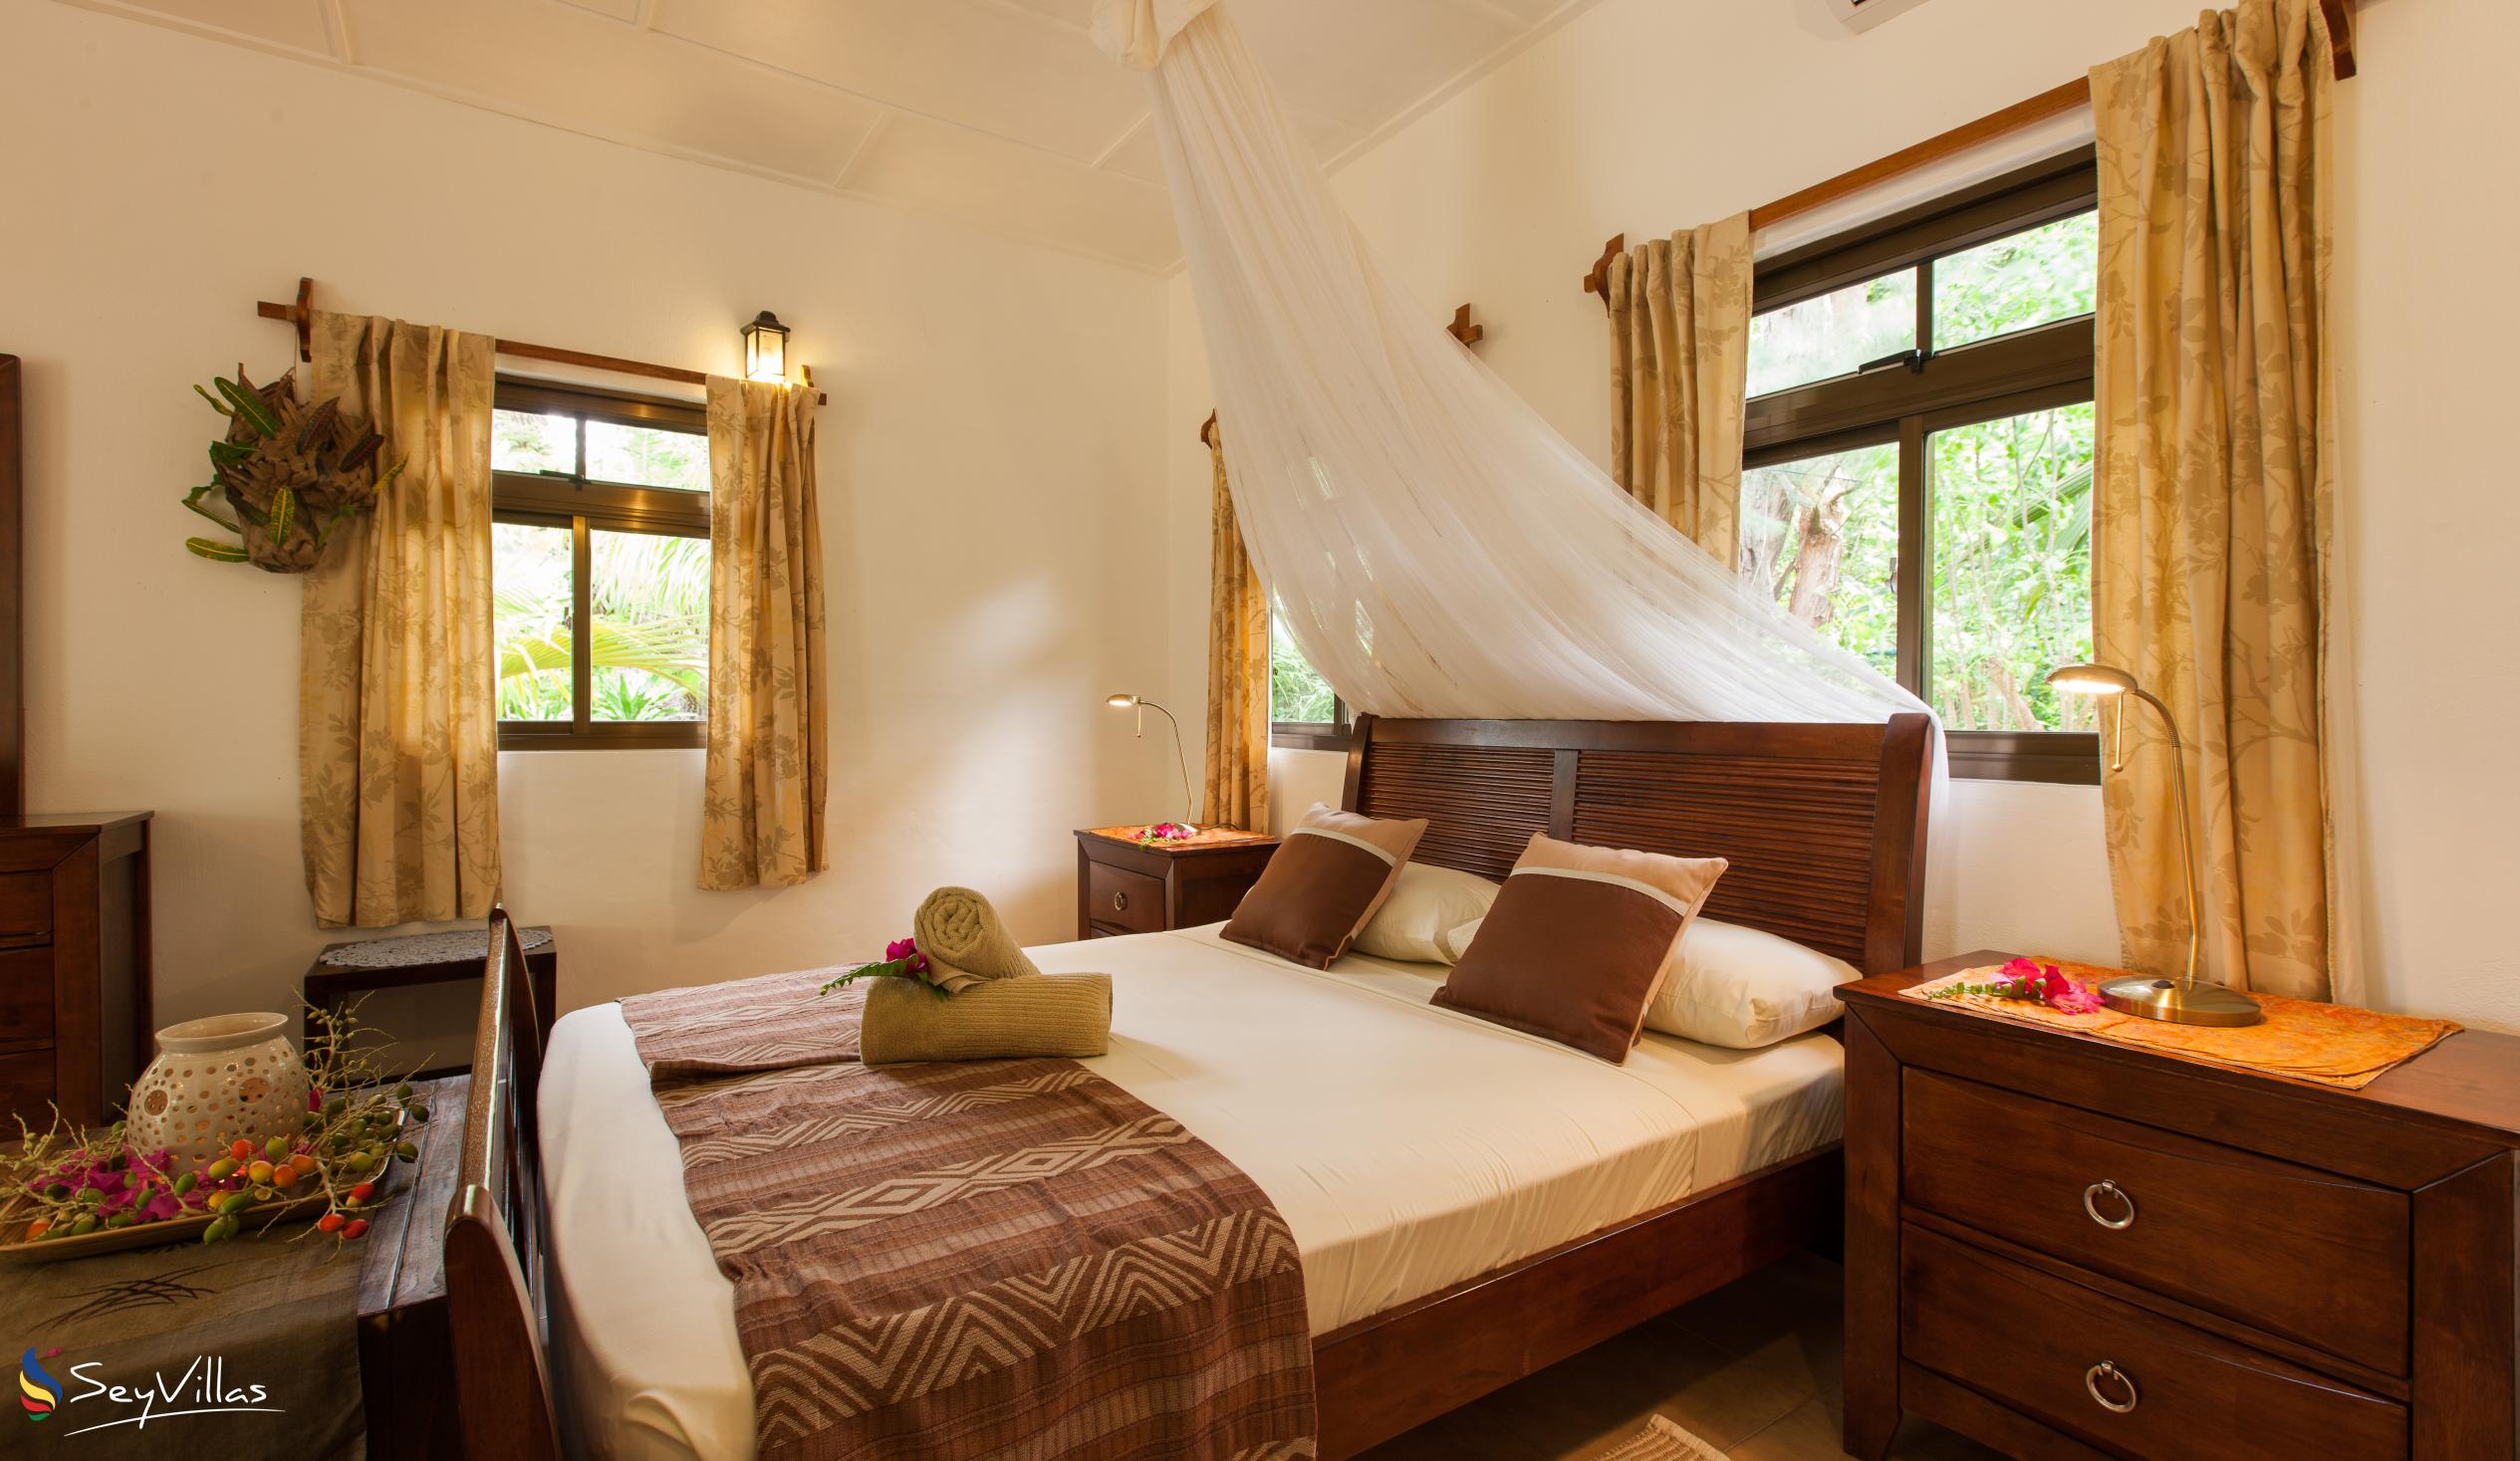 Photo 114: Domaine Les Rochers - 2-Bedroom Bungalow Palmier - La Digue (Seychelles)